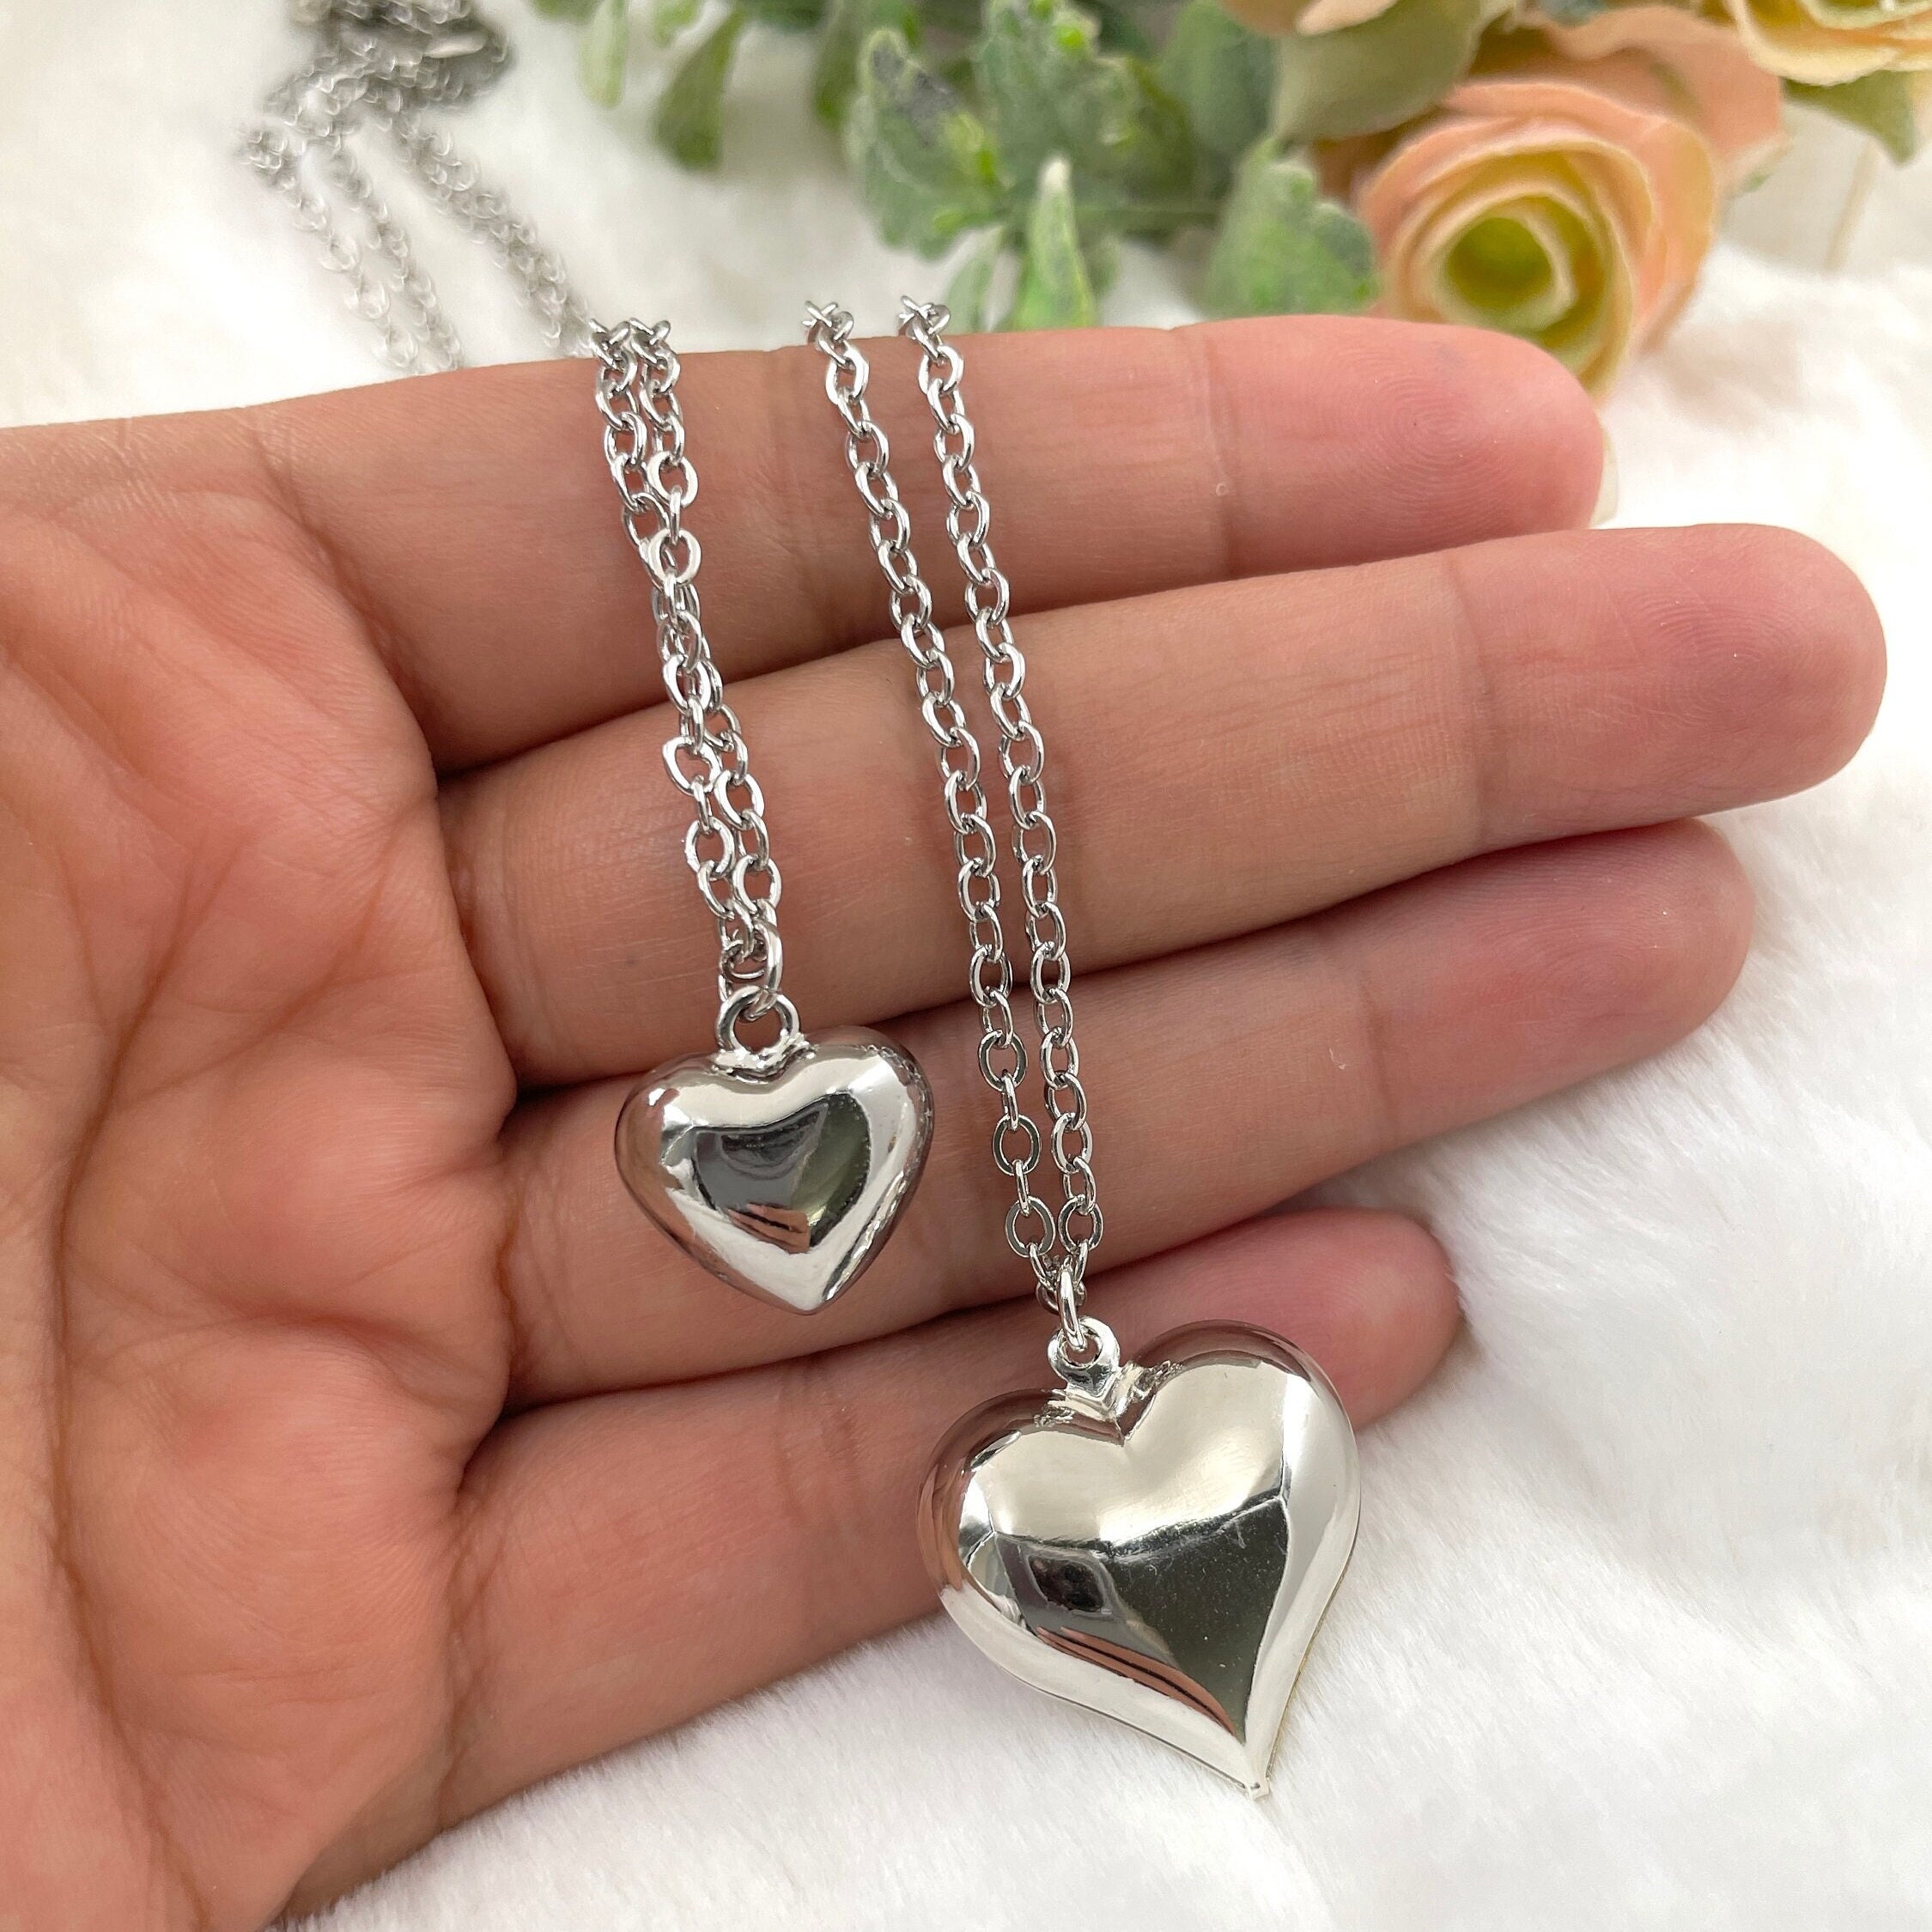 Crystal Embellished Heart Locket Pendant Necklace | David's Bridal